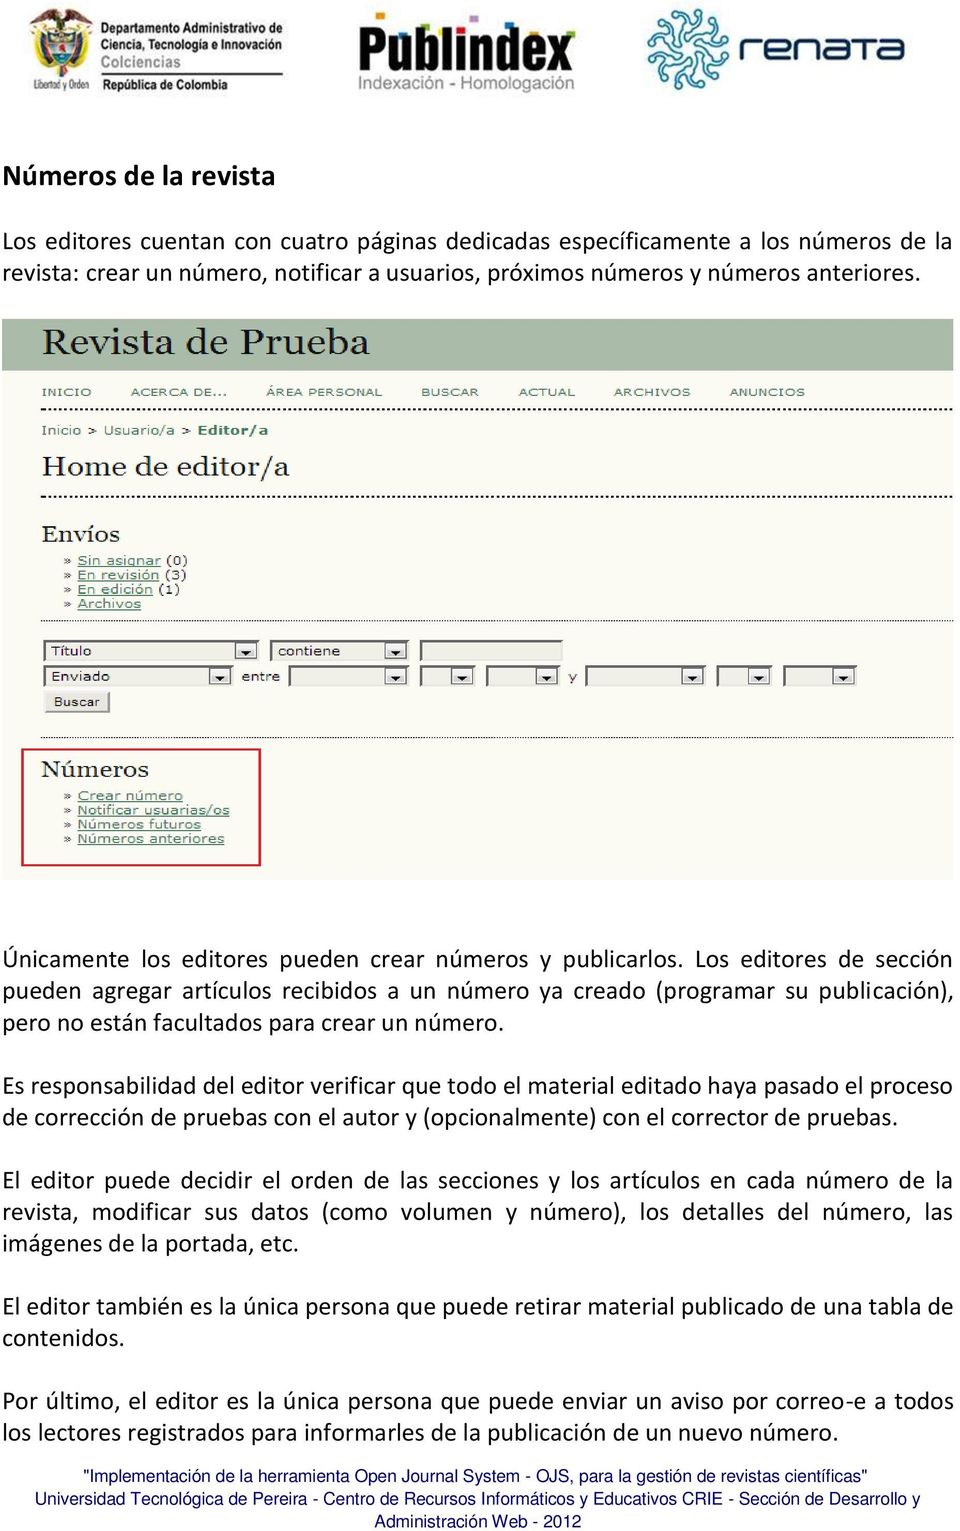 Los editores de sección pueden agregar artículos recibidos a un número ya creado (programar su publicación), pero no están facultados para crear un número.